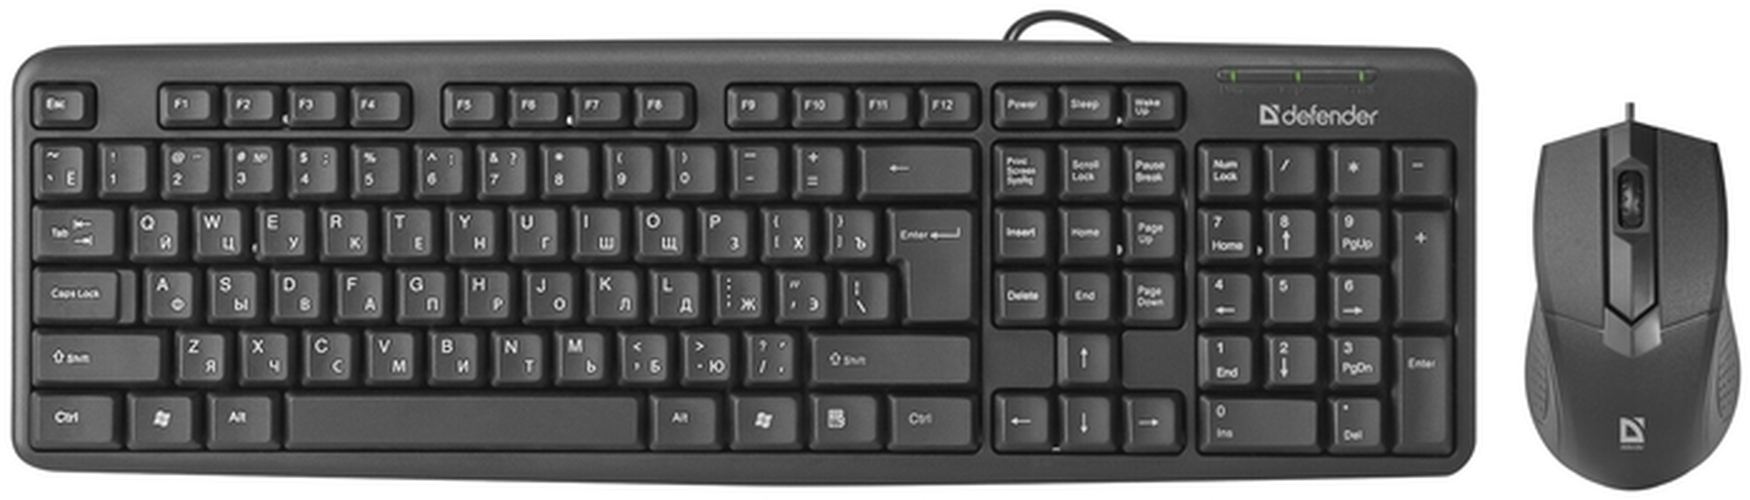 Комплект клавиатура + мышь Defender Dakota C-270 проводной офисный черный